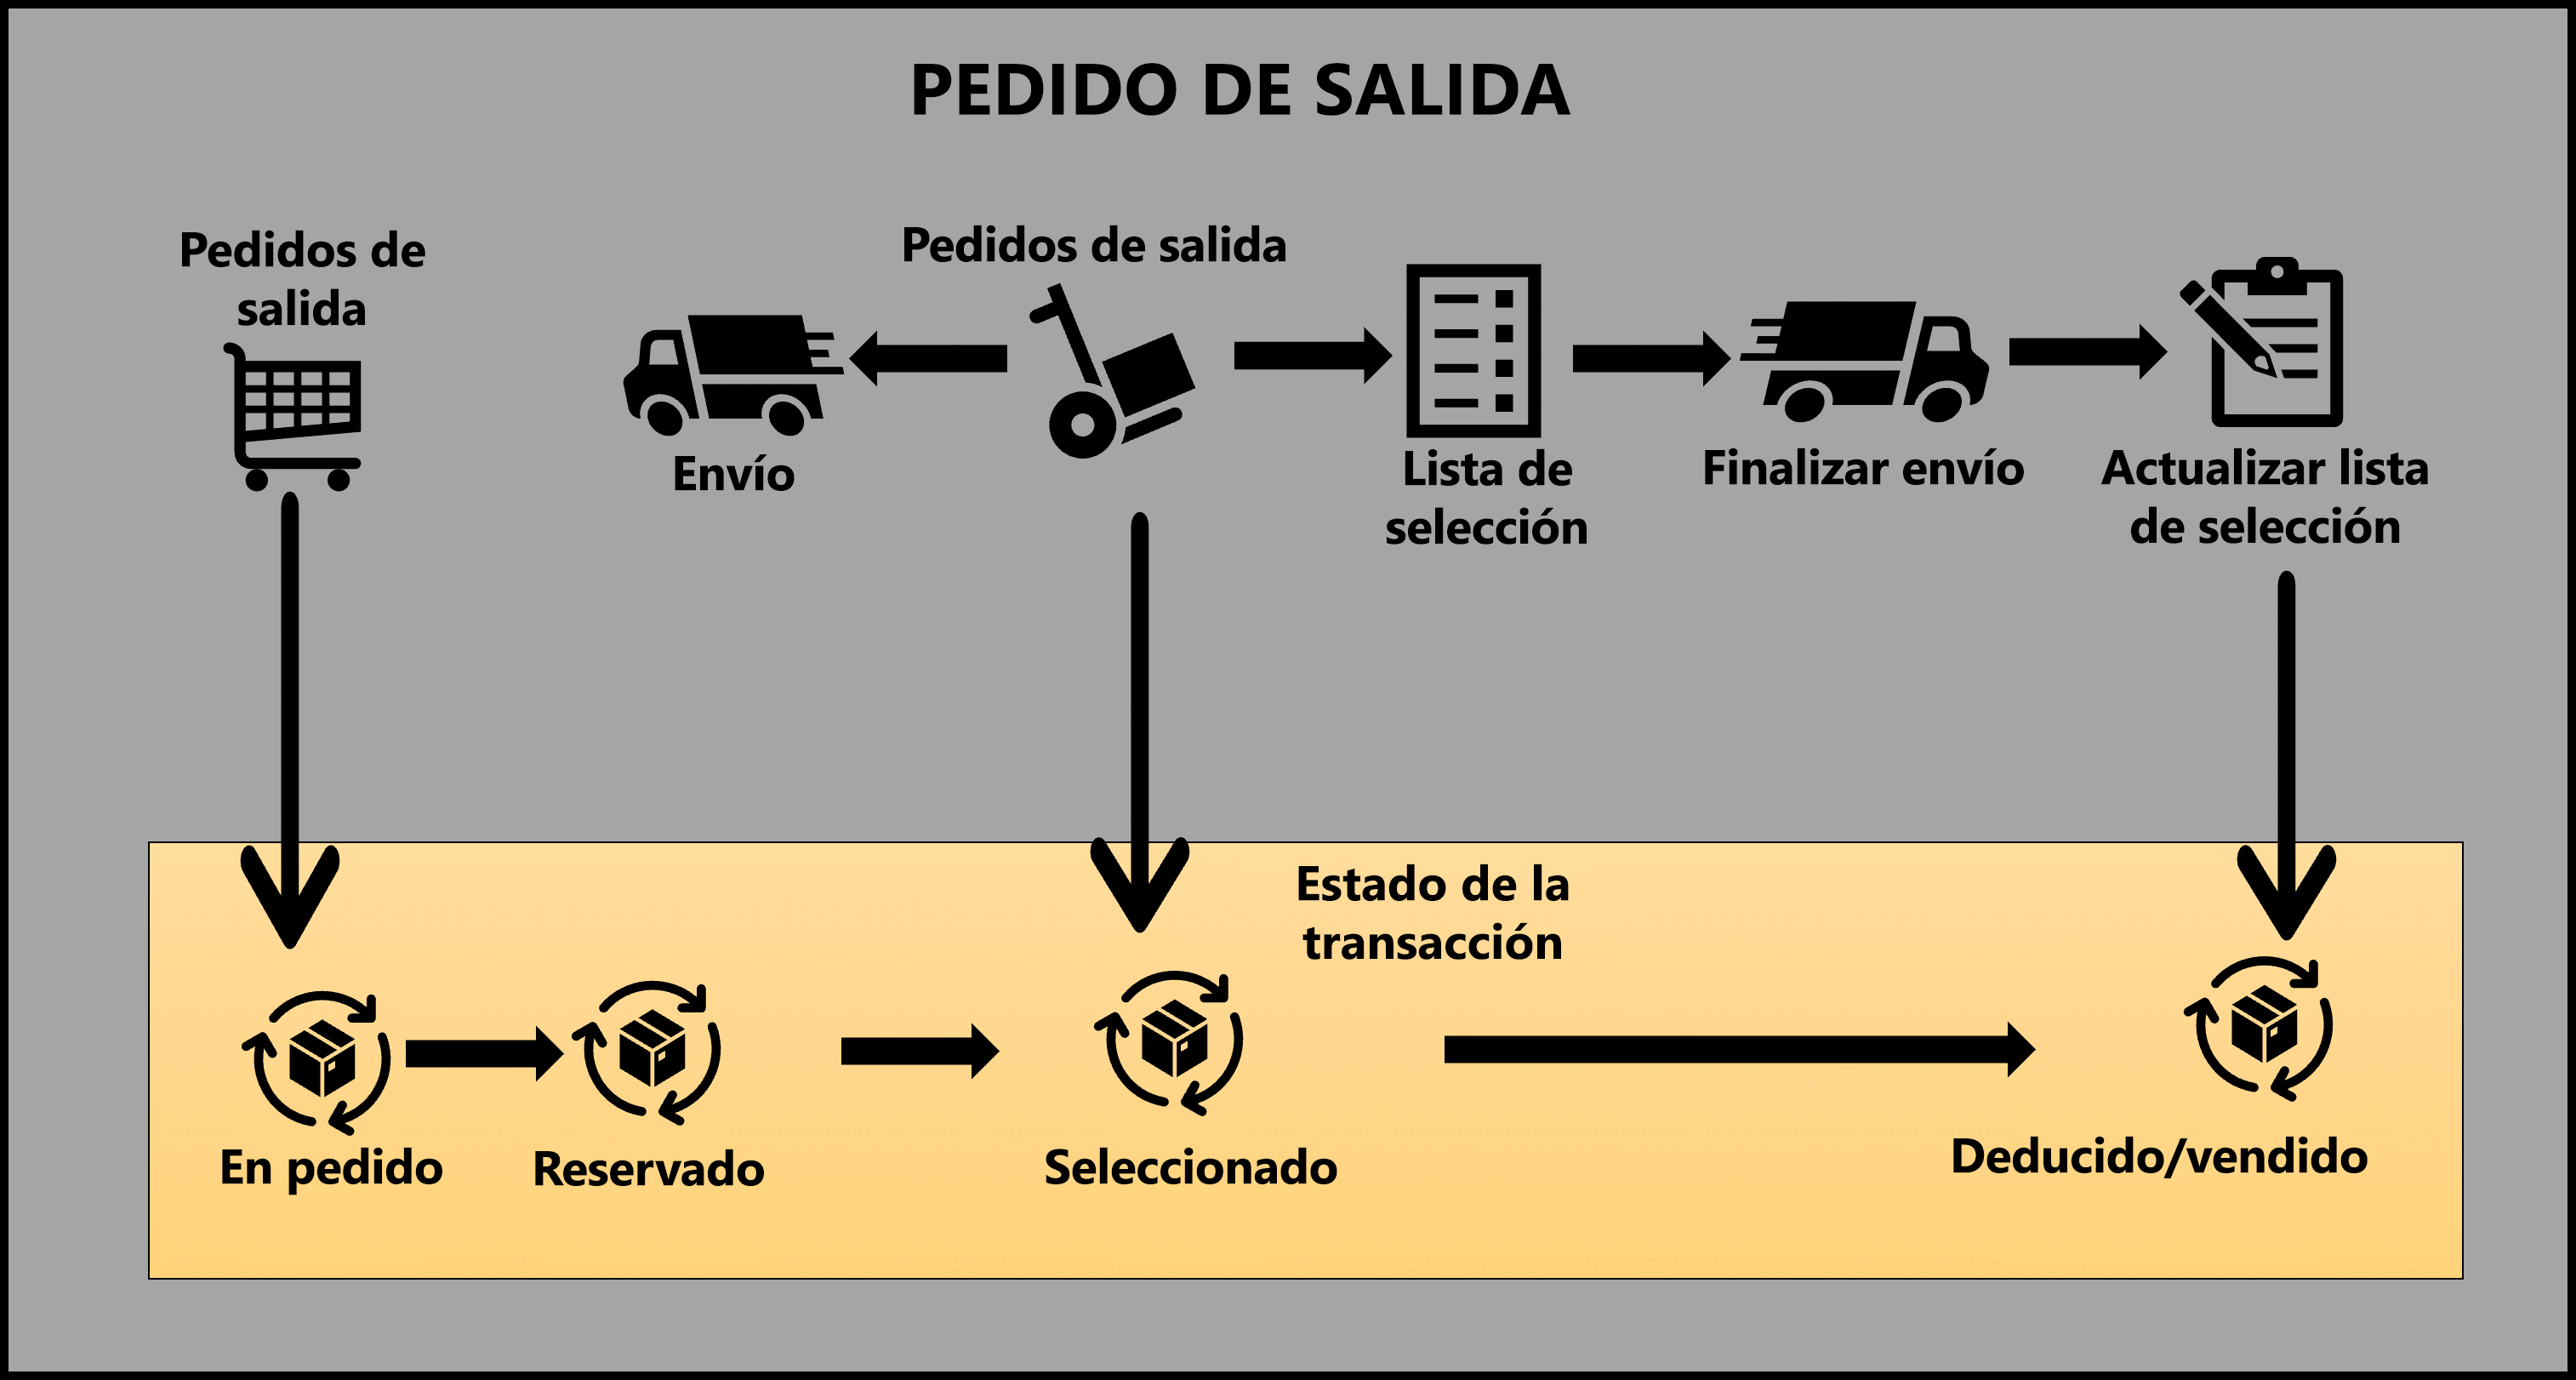 El diagrama muestra la descripción general del proceso de pedidos salientes y el estado de transacción correspondiente.